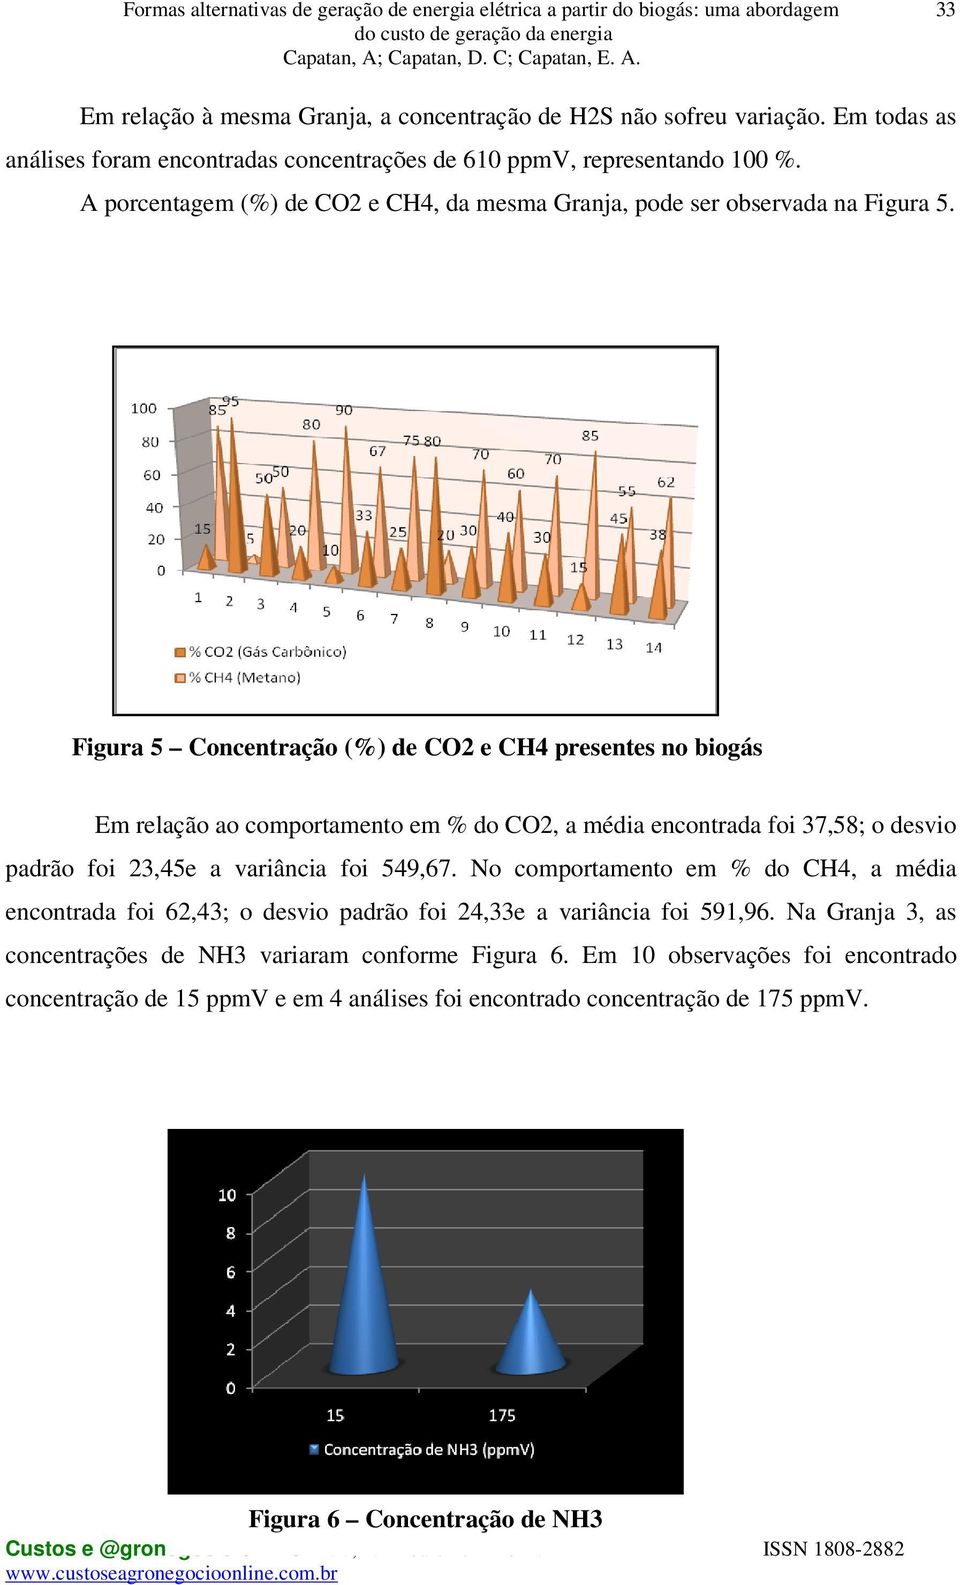 Figura 5 Concentração (%) de CO2 e CH4 presentes no biogás coletado Em relação ao comportamento em % do CO2, a média encontrada foi 37,58; o desvio padrão foi 23,45e a variância foi